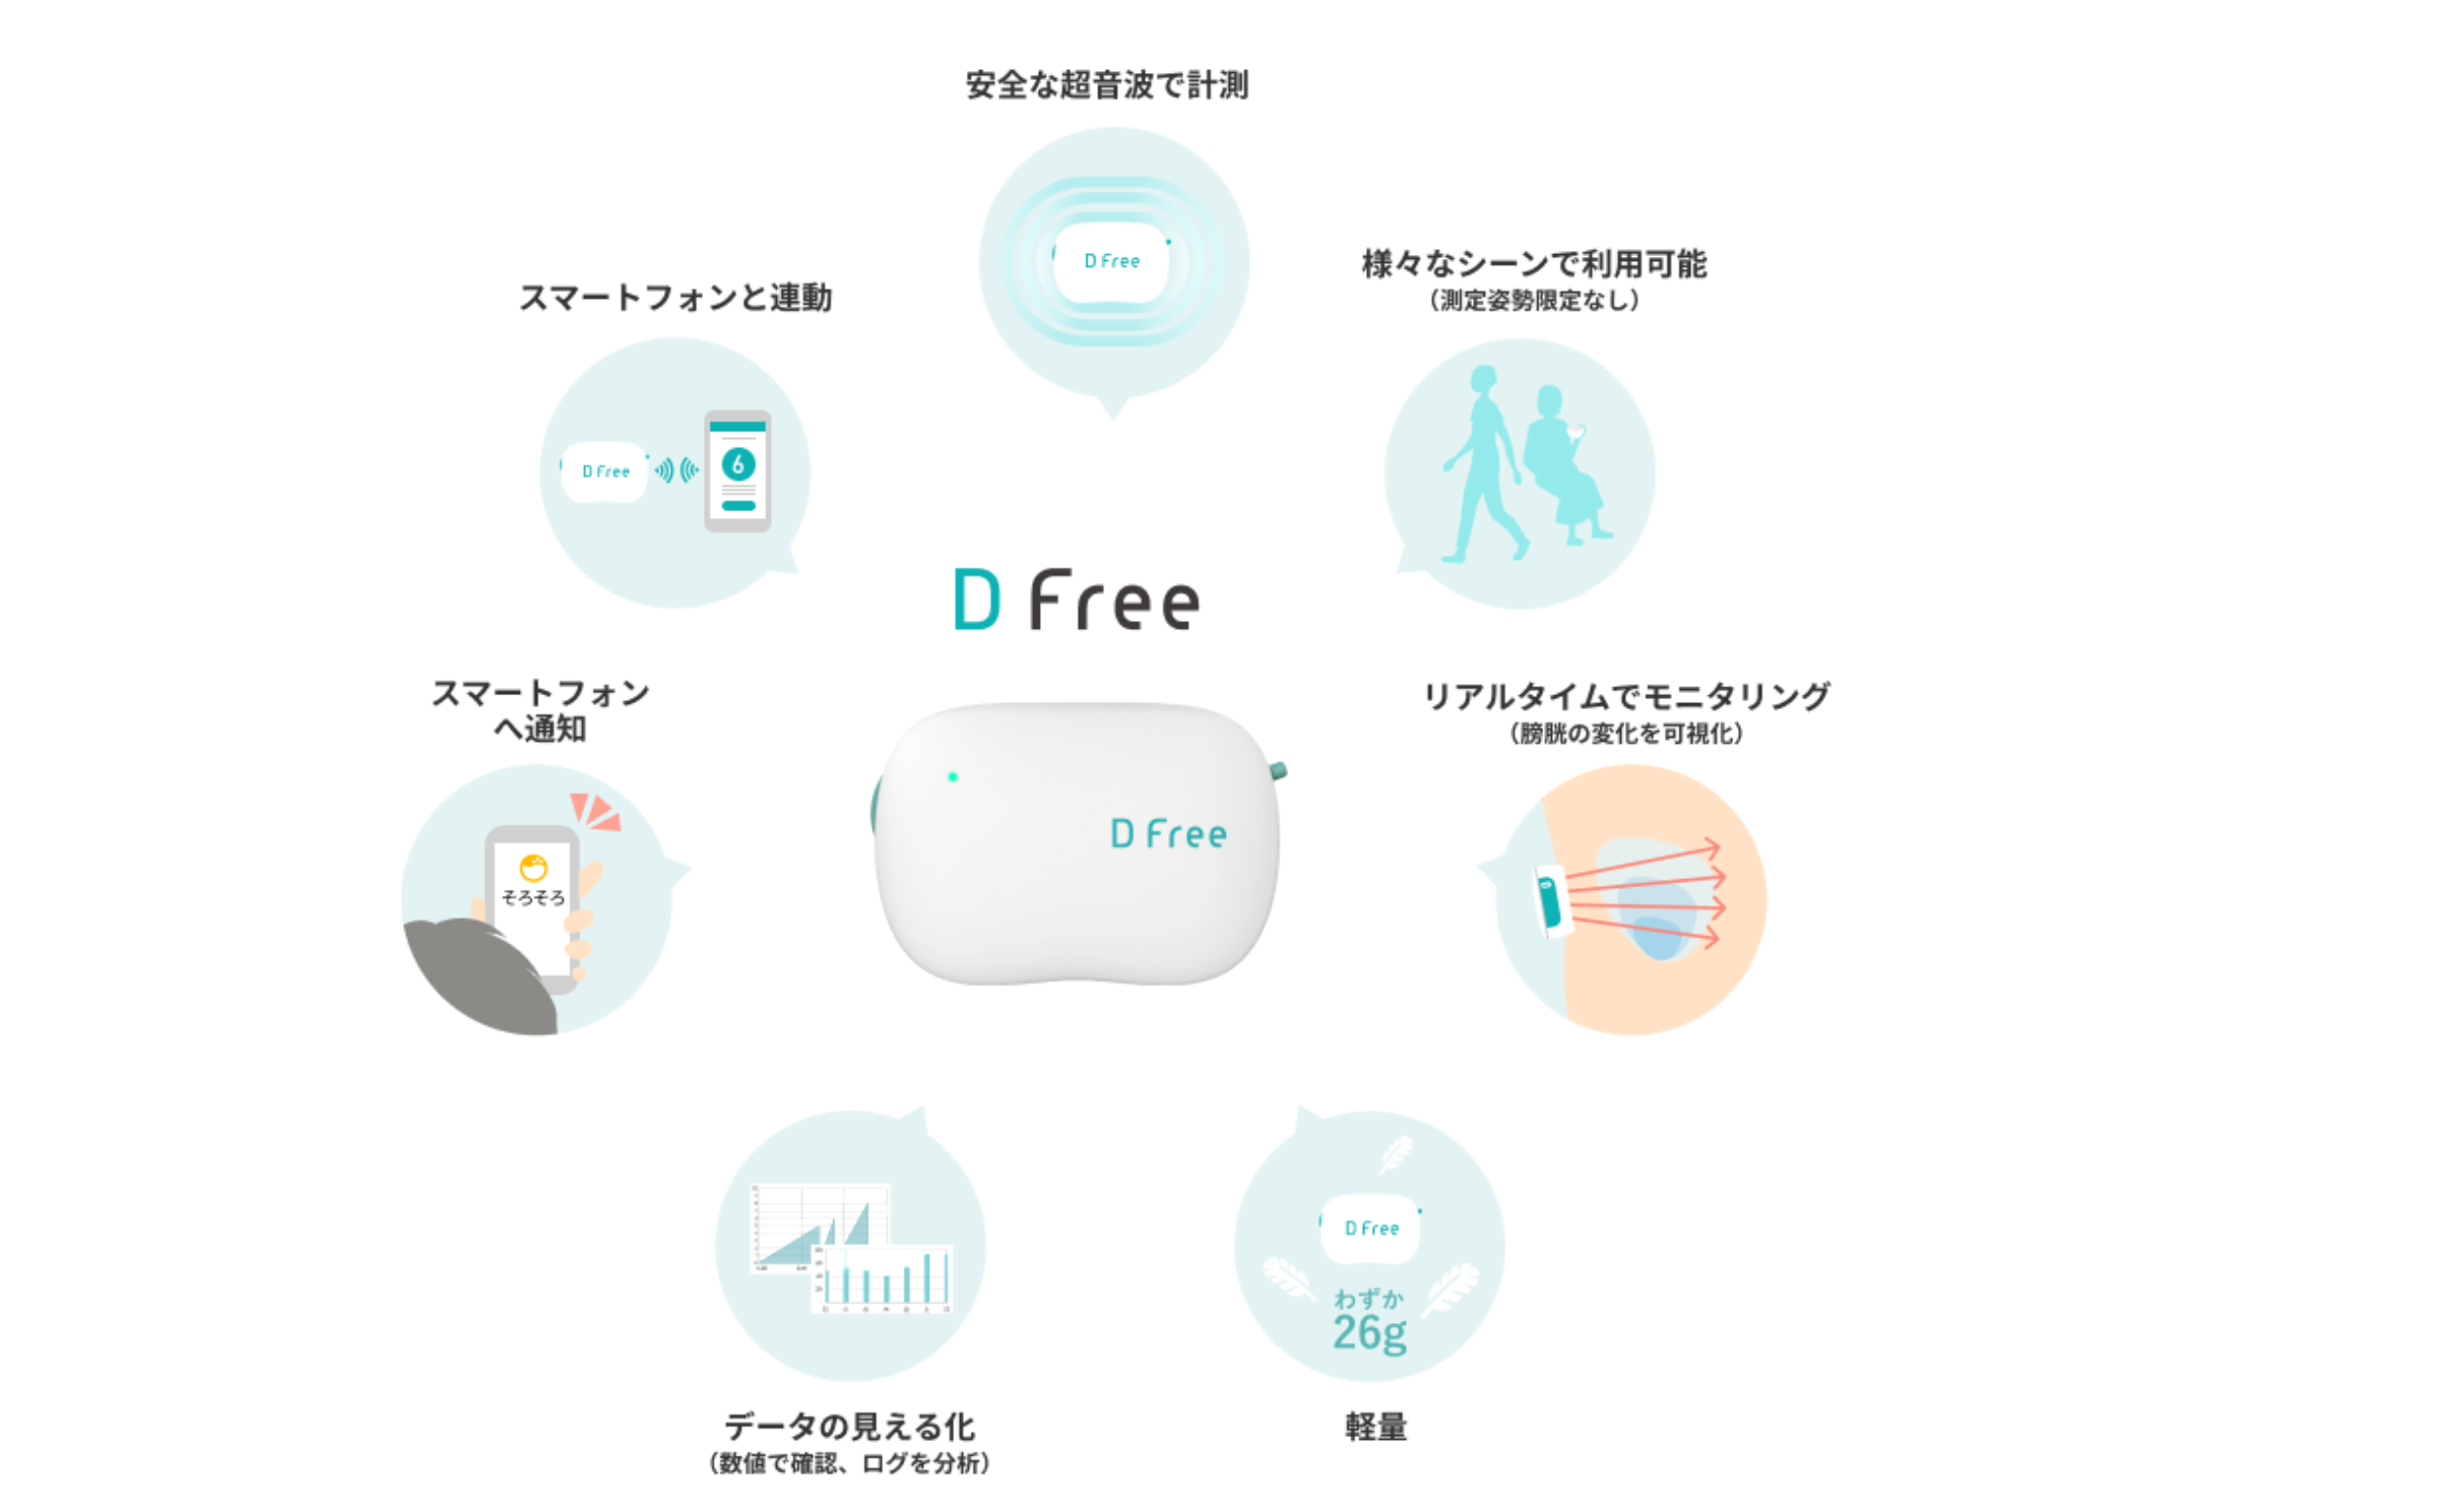 トリプル・ダブリュー・ジャパン株式会社の｢DFree」をご紹介